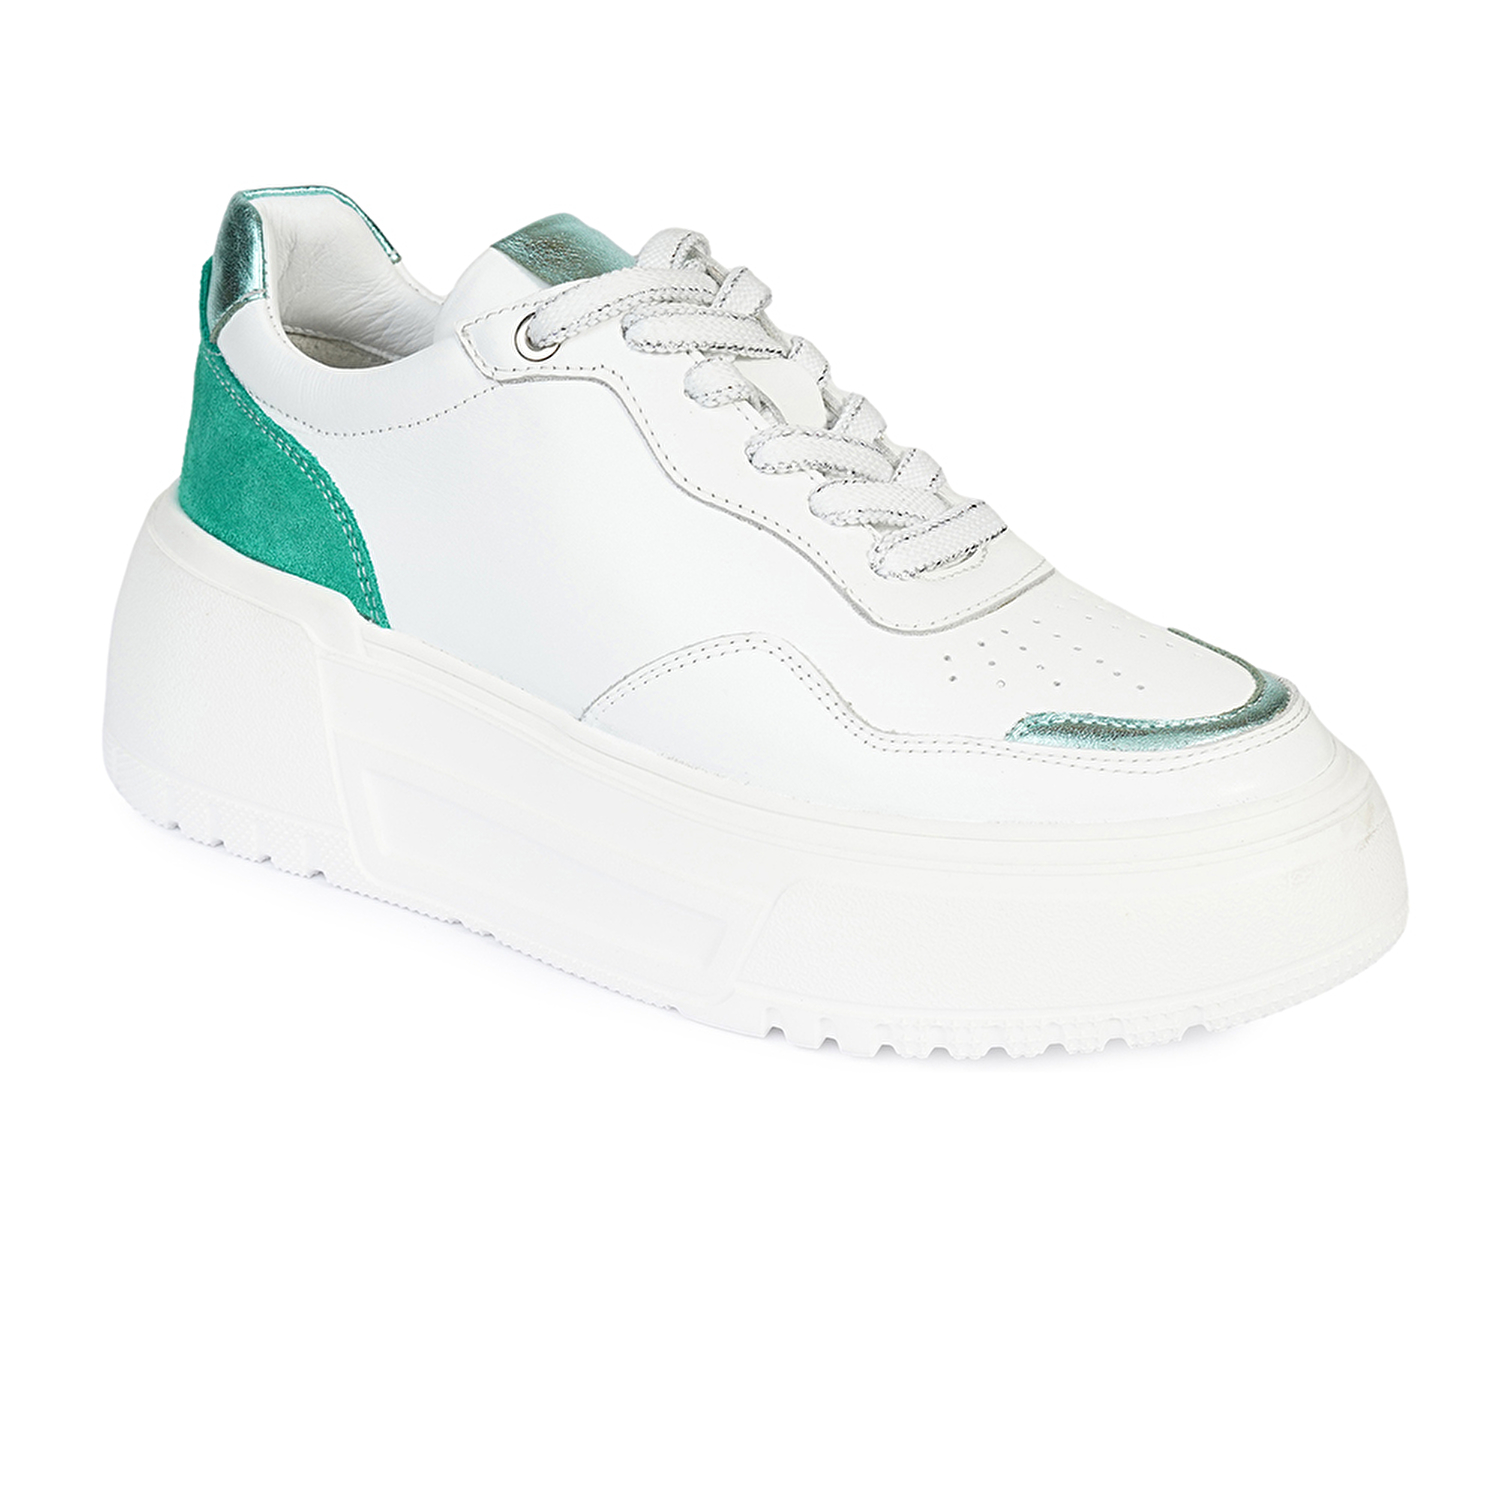 Kadın Beyaz Yeşil Hakiki Deri Sneaker Ayakkabı 4Y2SA59041-1